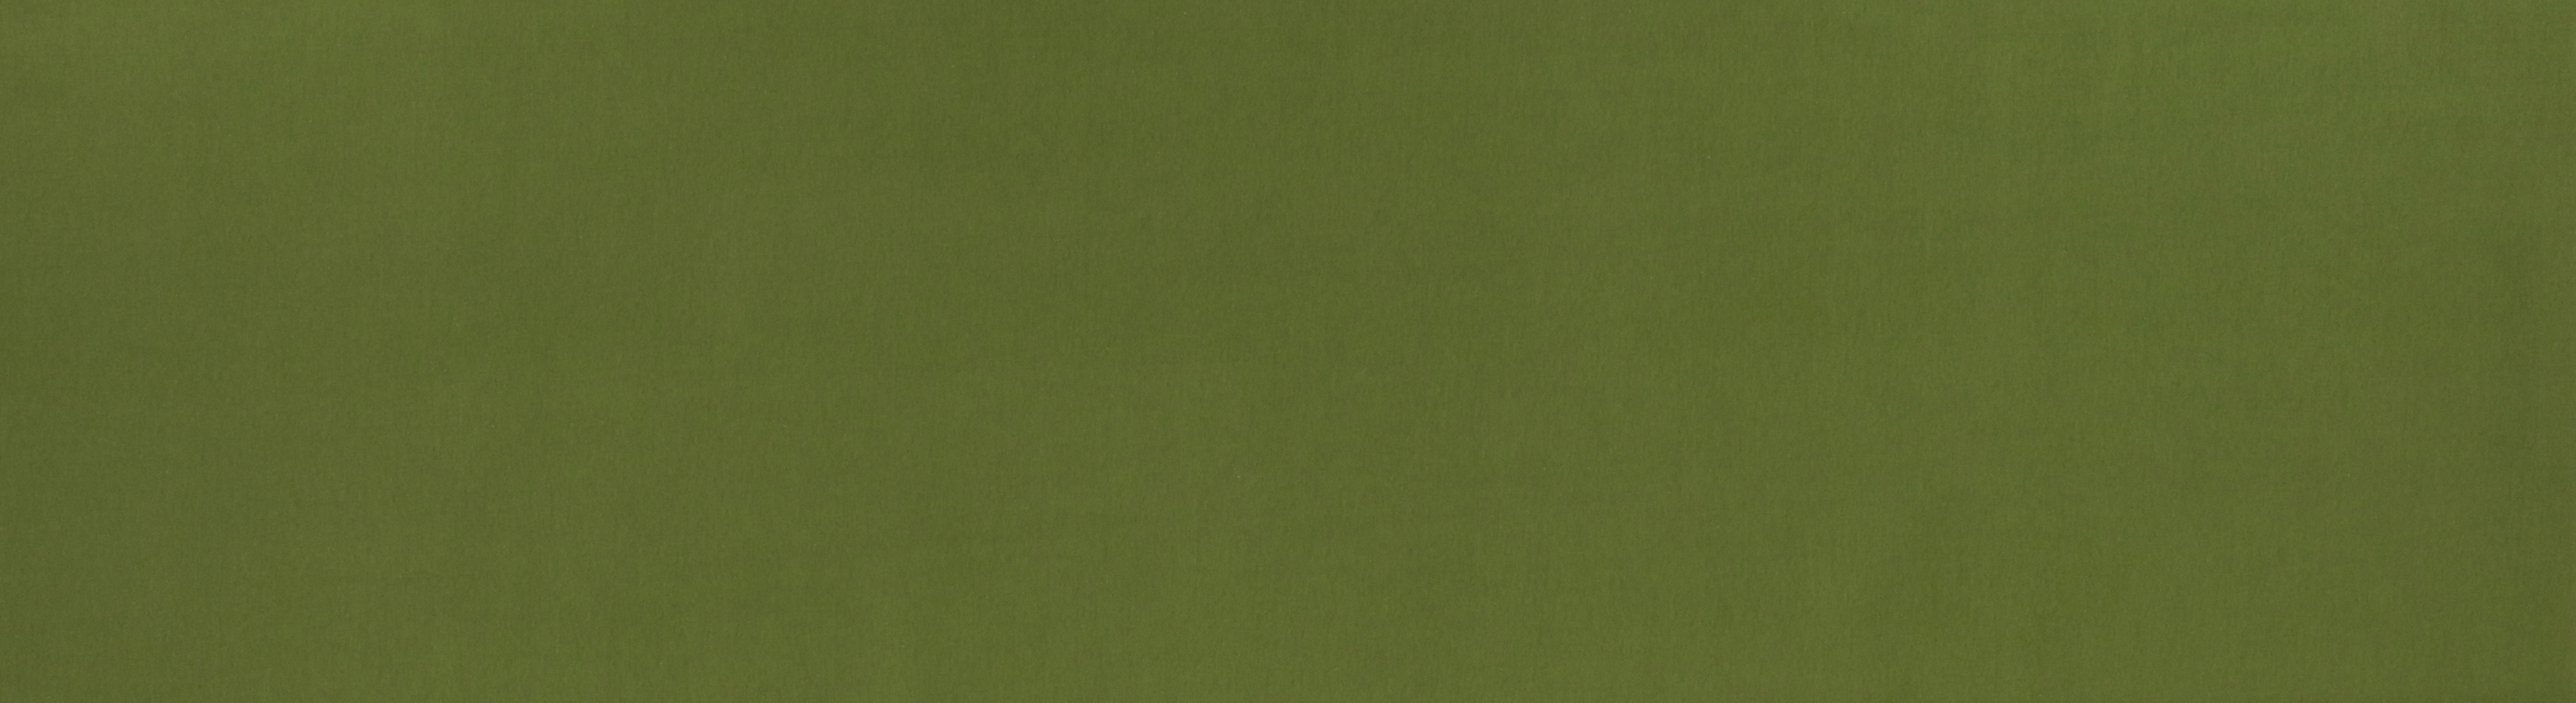 Bündchen, helles moosgrün